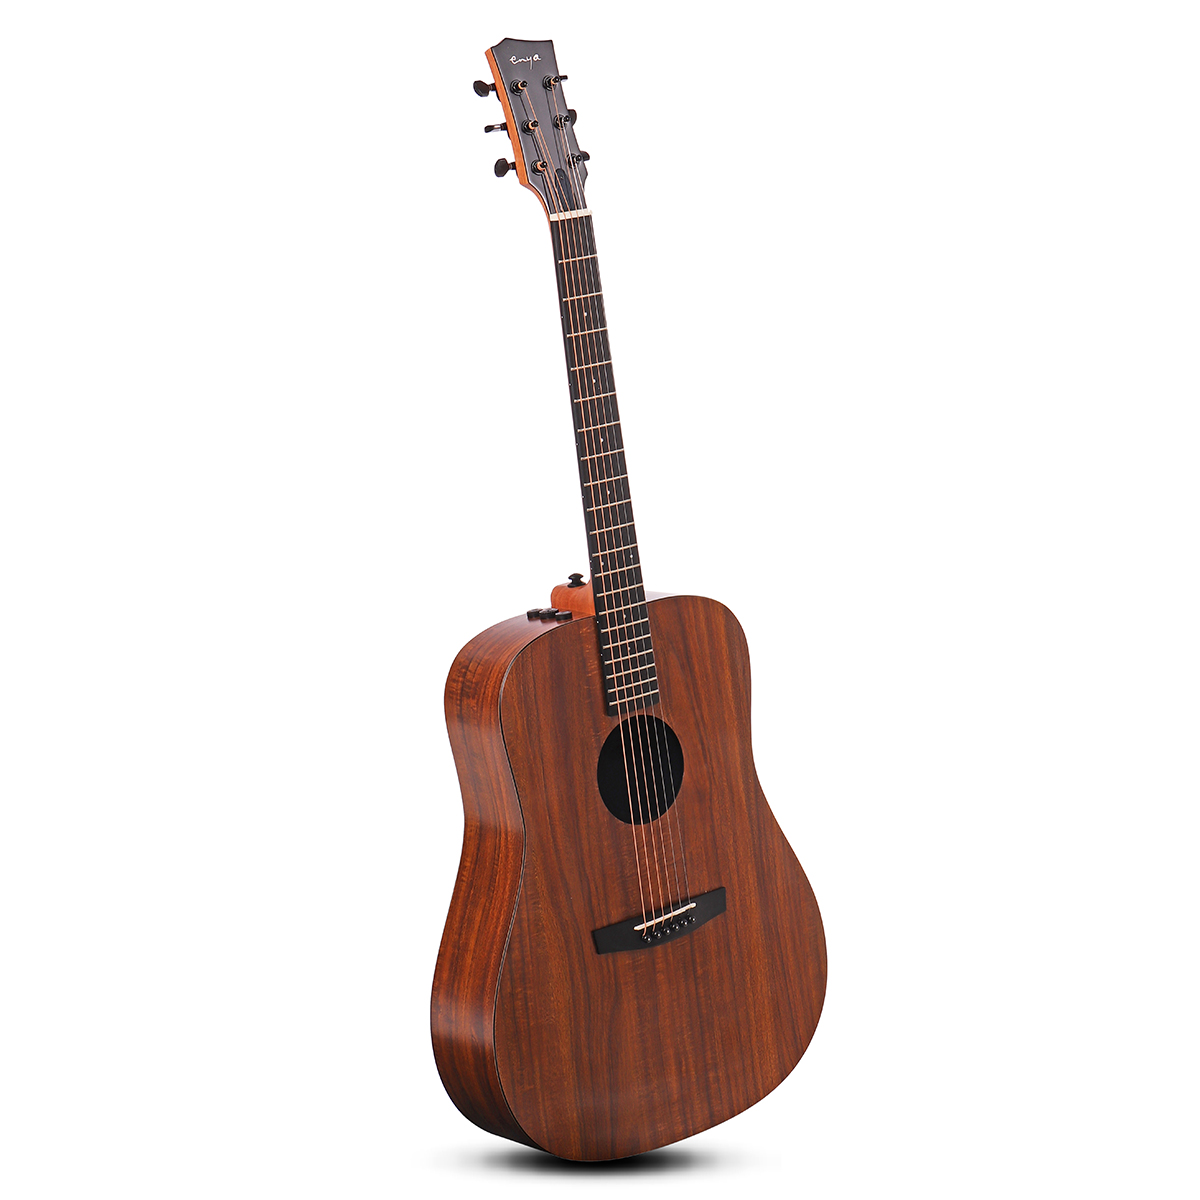 

Enya ED-X1 / EQ 41 дюймов D Доска HPL с рисунком KOA Черная гитара Richlite Fingerboard Folk Guitar